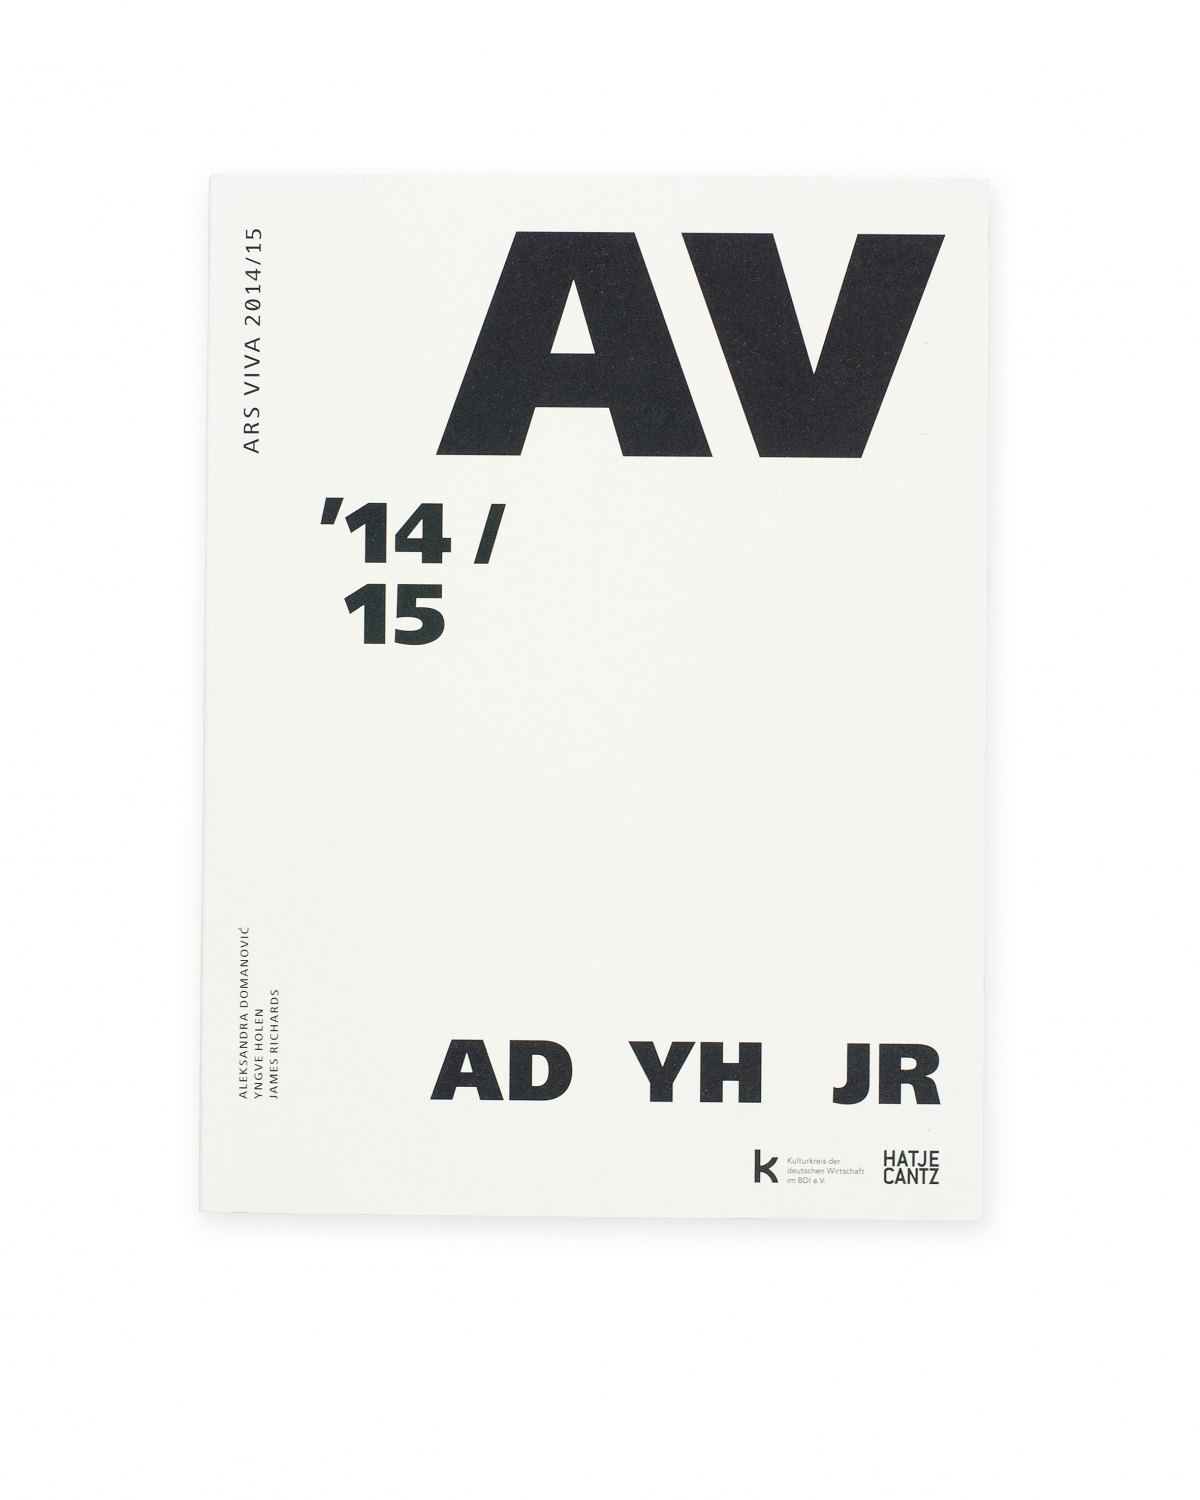 Yngve Holen, Ars Viva 14/15  Catalogue, ed. by Kulturkreis der deutschen Wirtschaft, Catalogue, Hamburger Kunsthalle, Ostfildern 2014, 152 p.  ISBN 978-3-77573-866-8